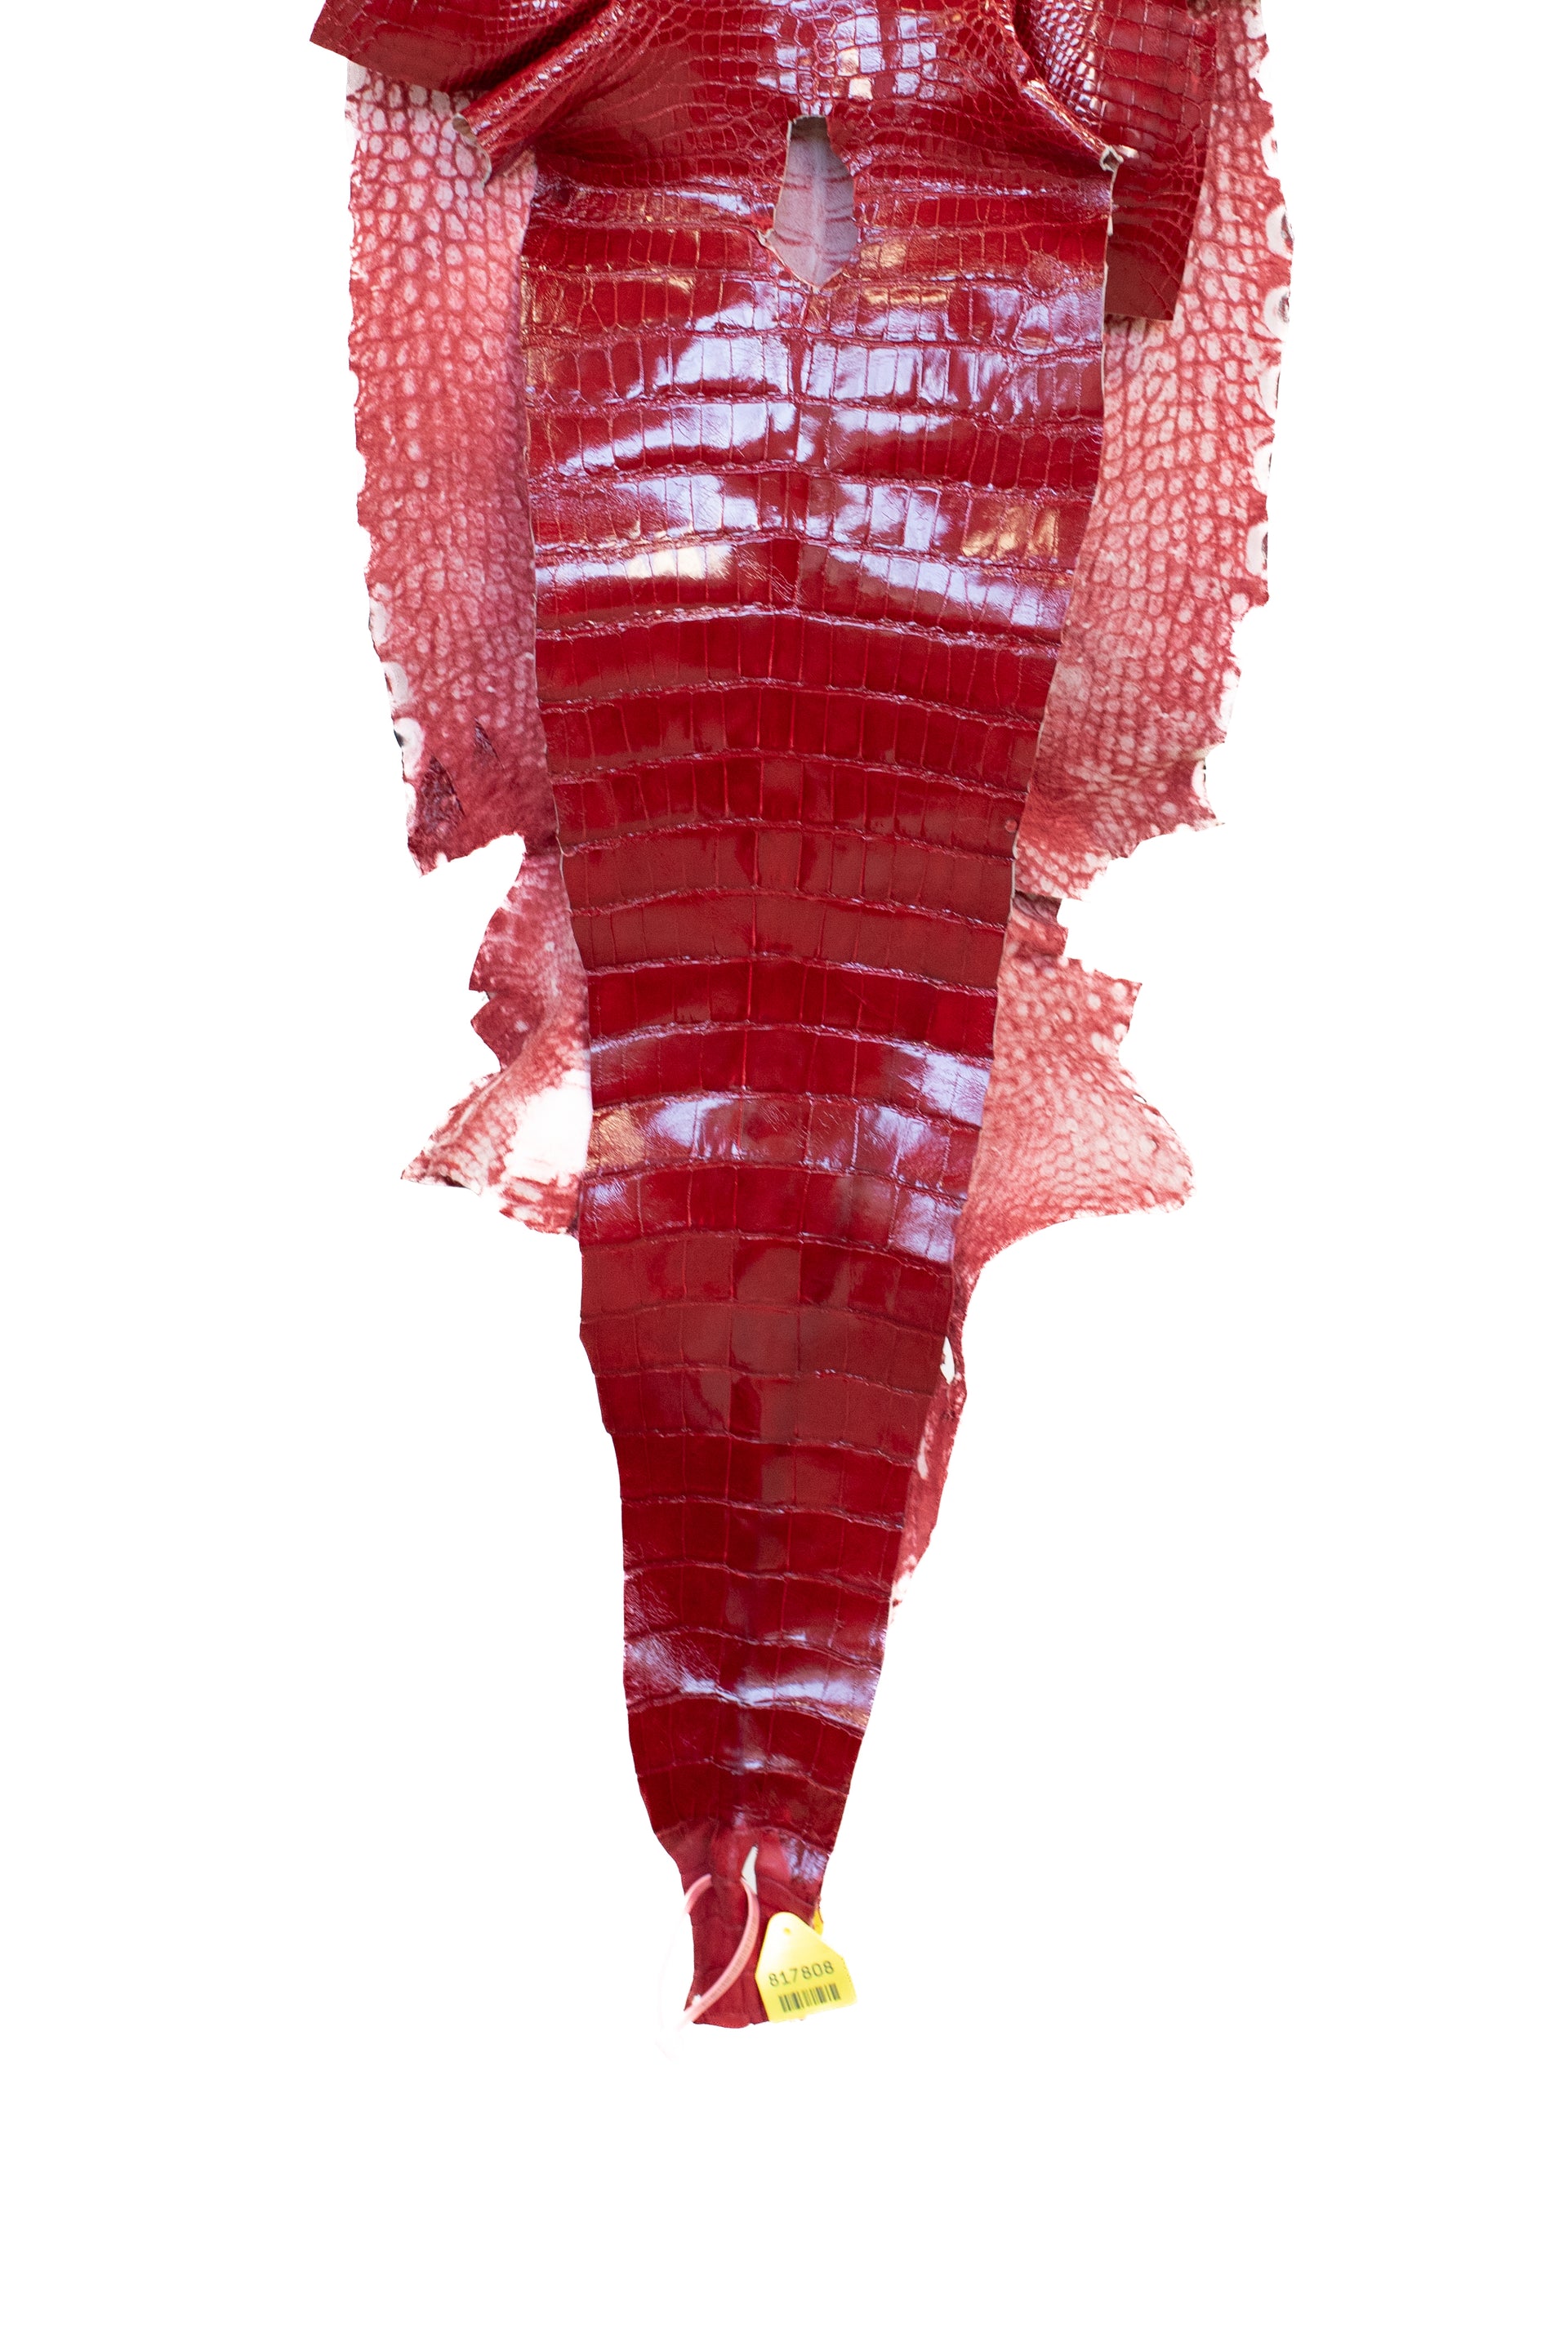 39 cm Grade 2/3 Red Glazed Wild American Alligator Leather - Tag: LA15-0028017